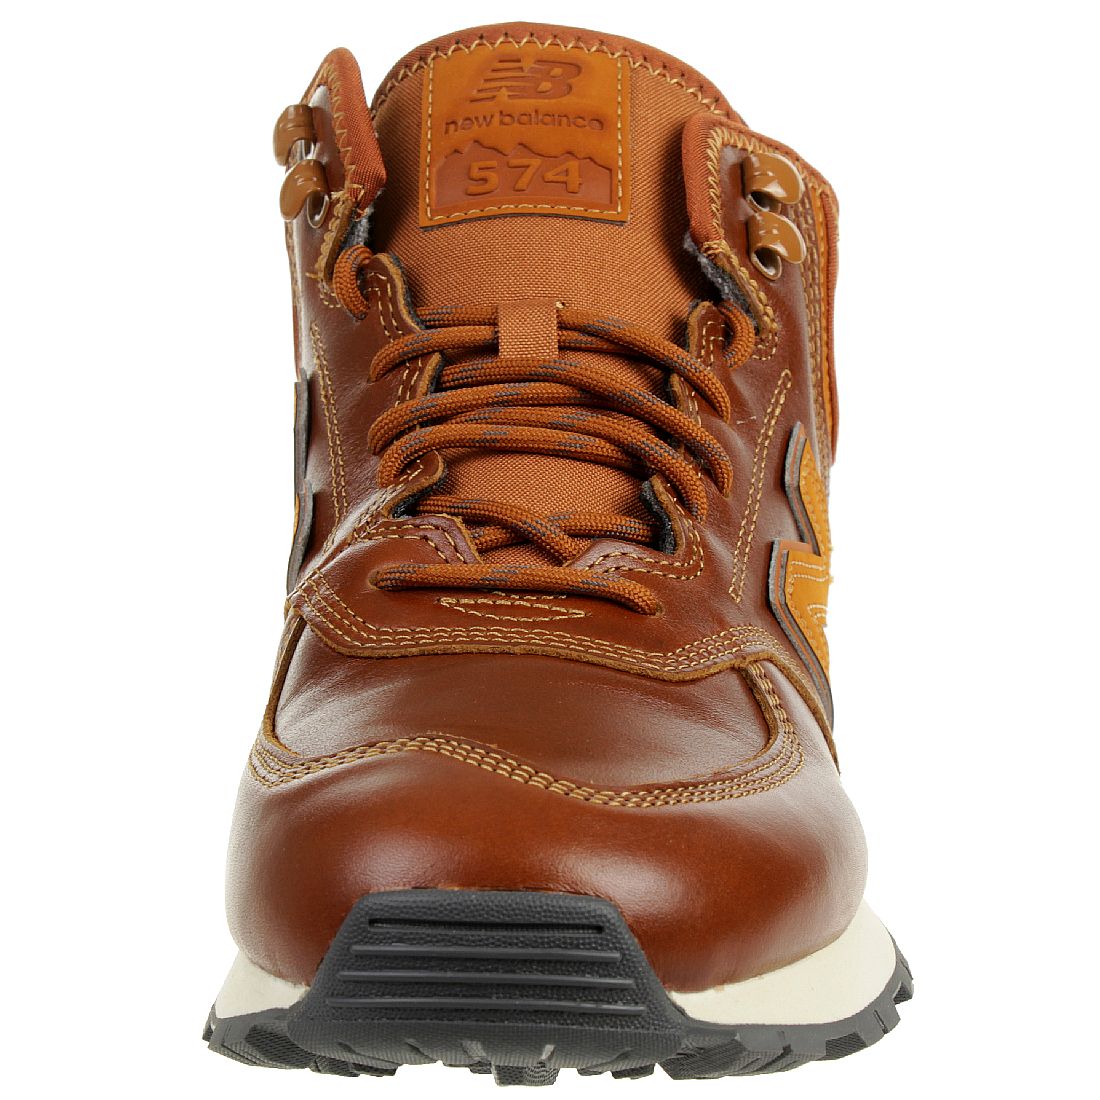 New Balance MH 574 OAD Classic Sneaker Winter Schuhe gefüttert